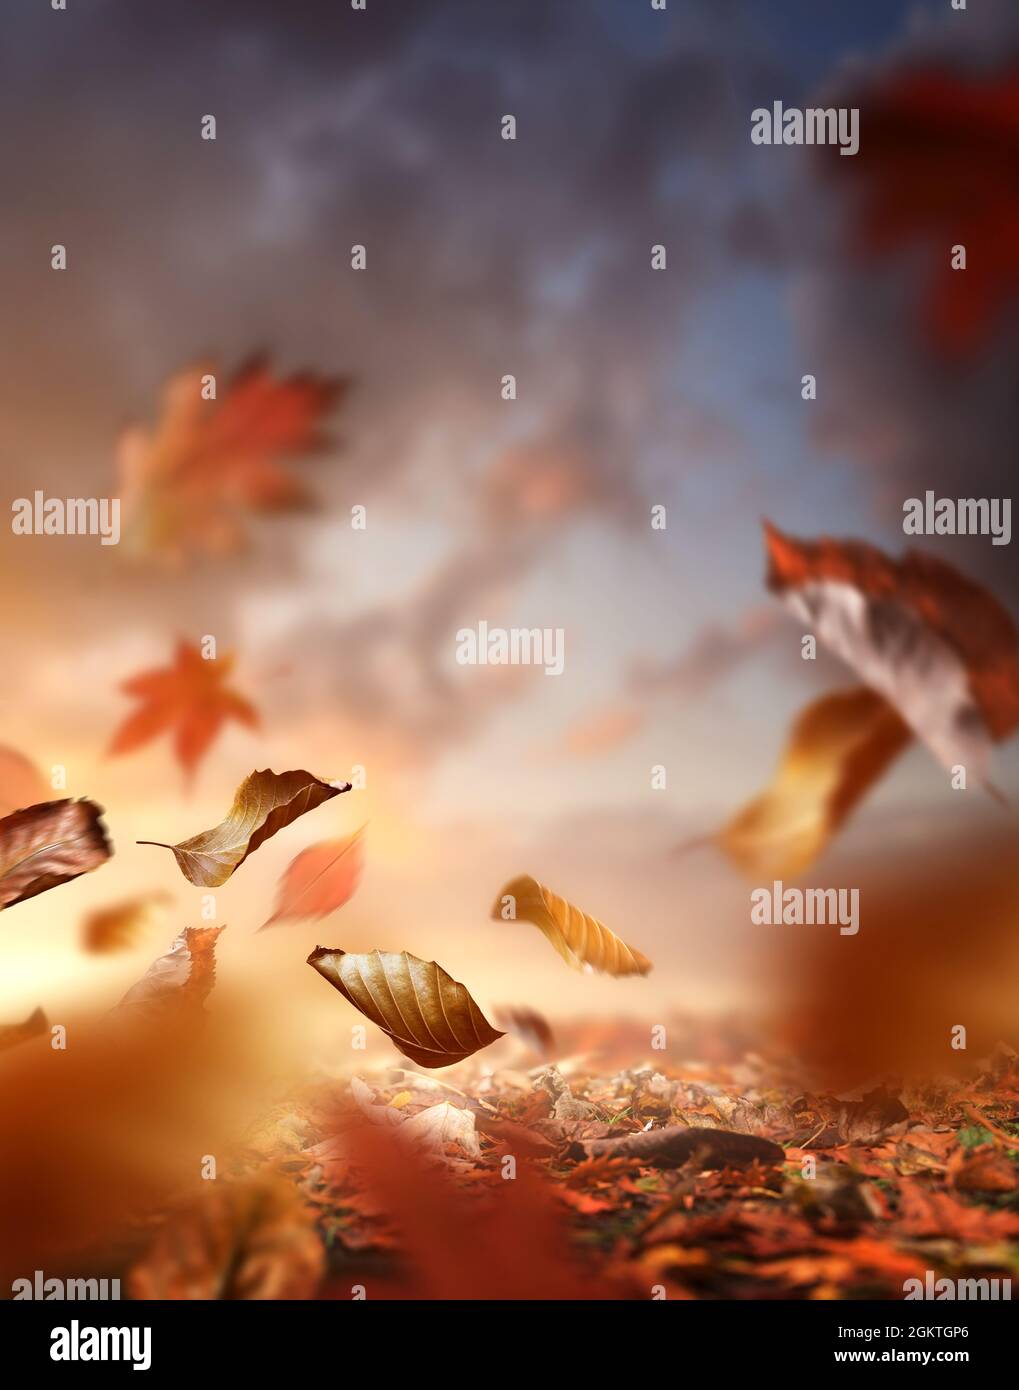 Herbstsaison. Herbsthintergrund mit dem Boden bedeckt mit Blättern und der Wind bläst sie in die Luft. Stockfoto